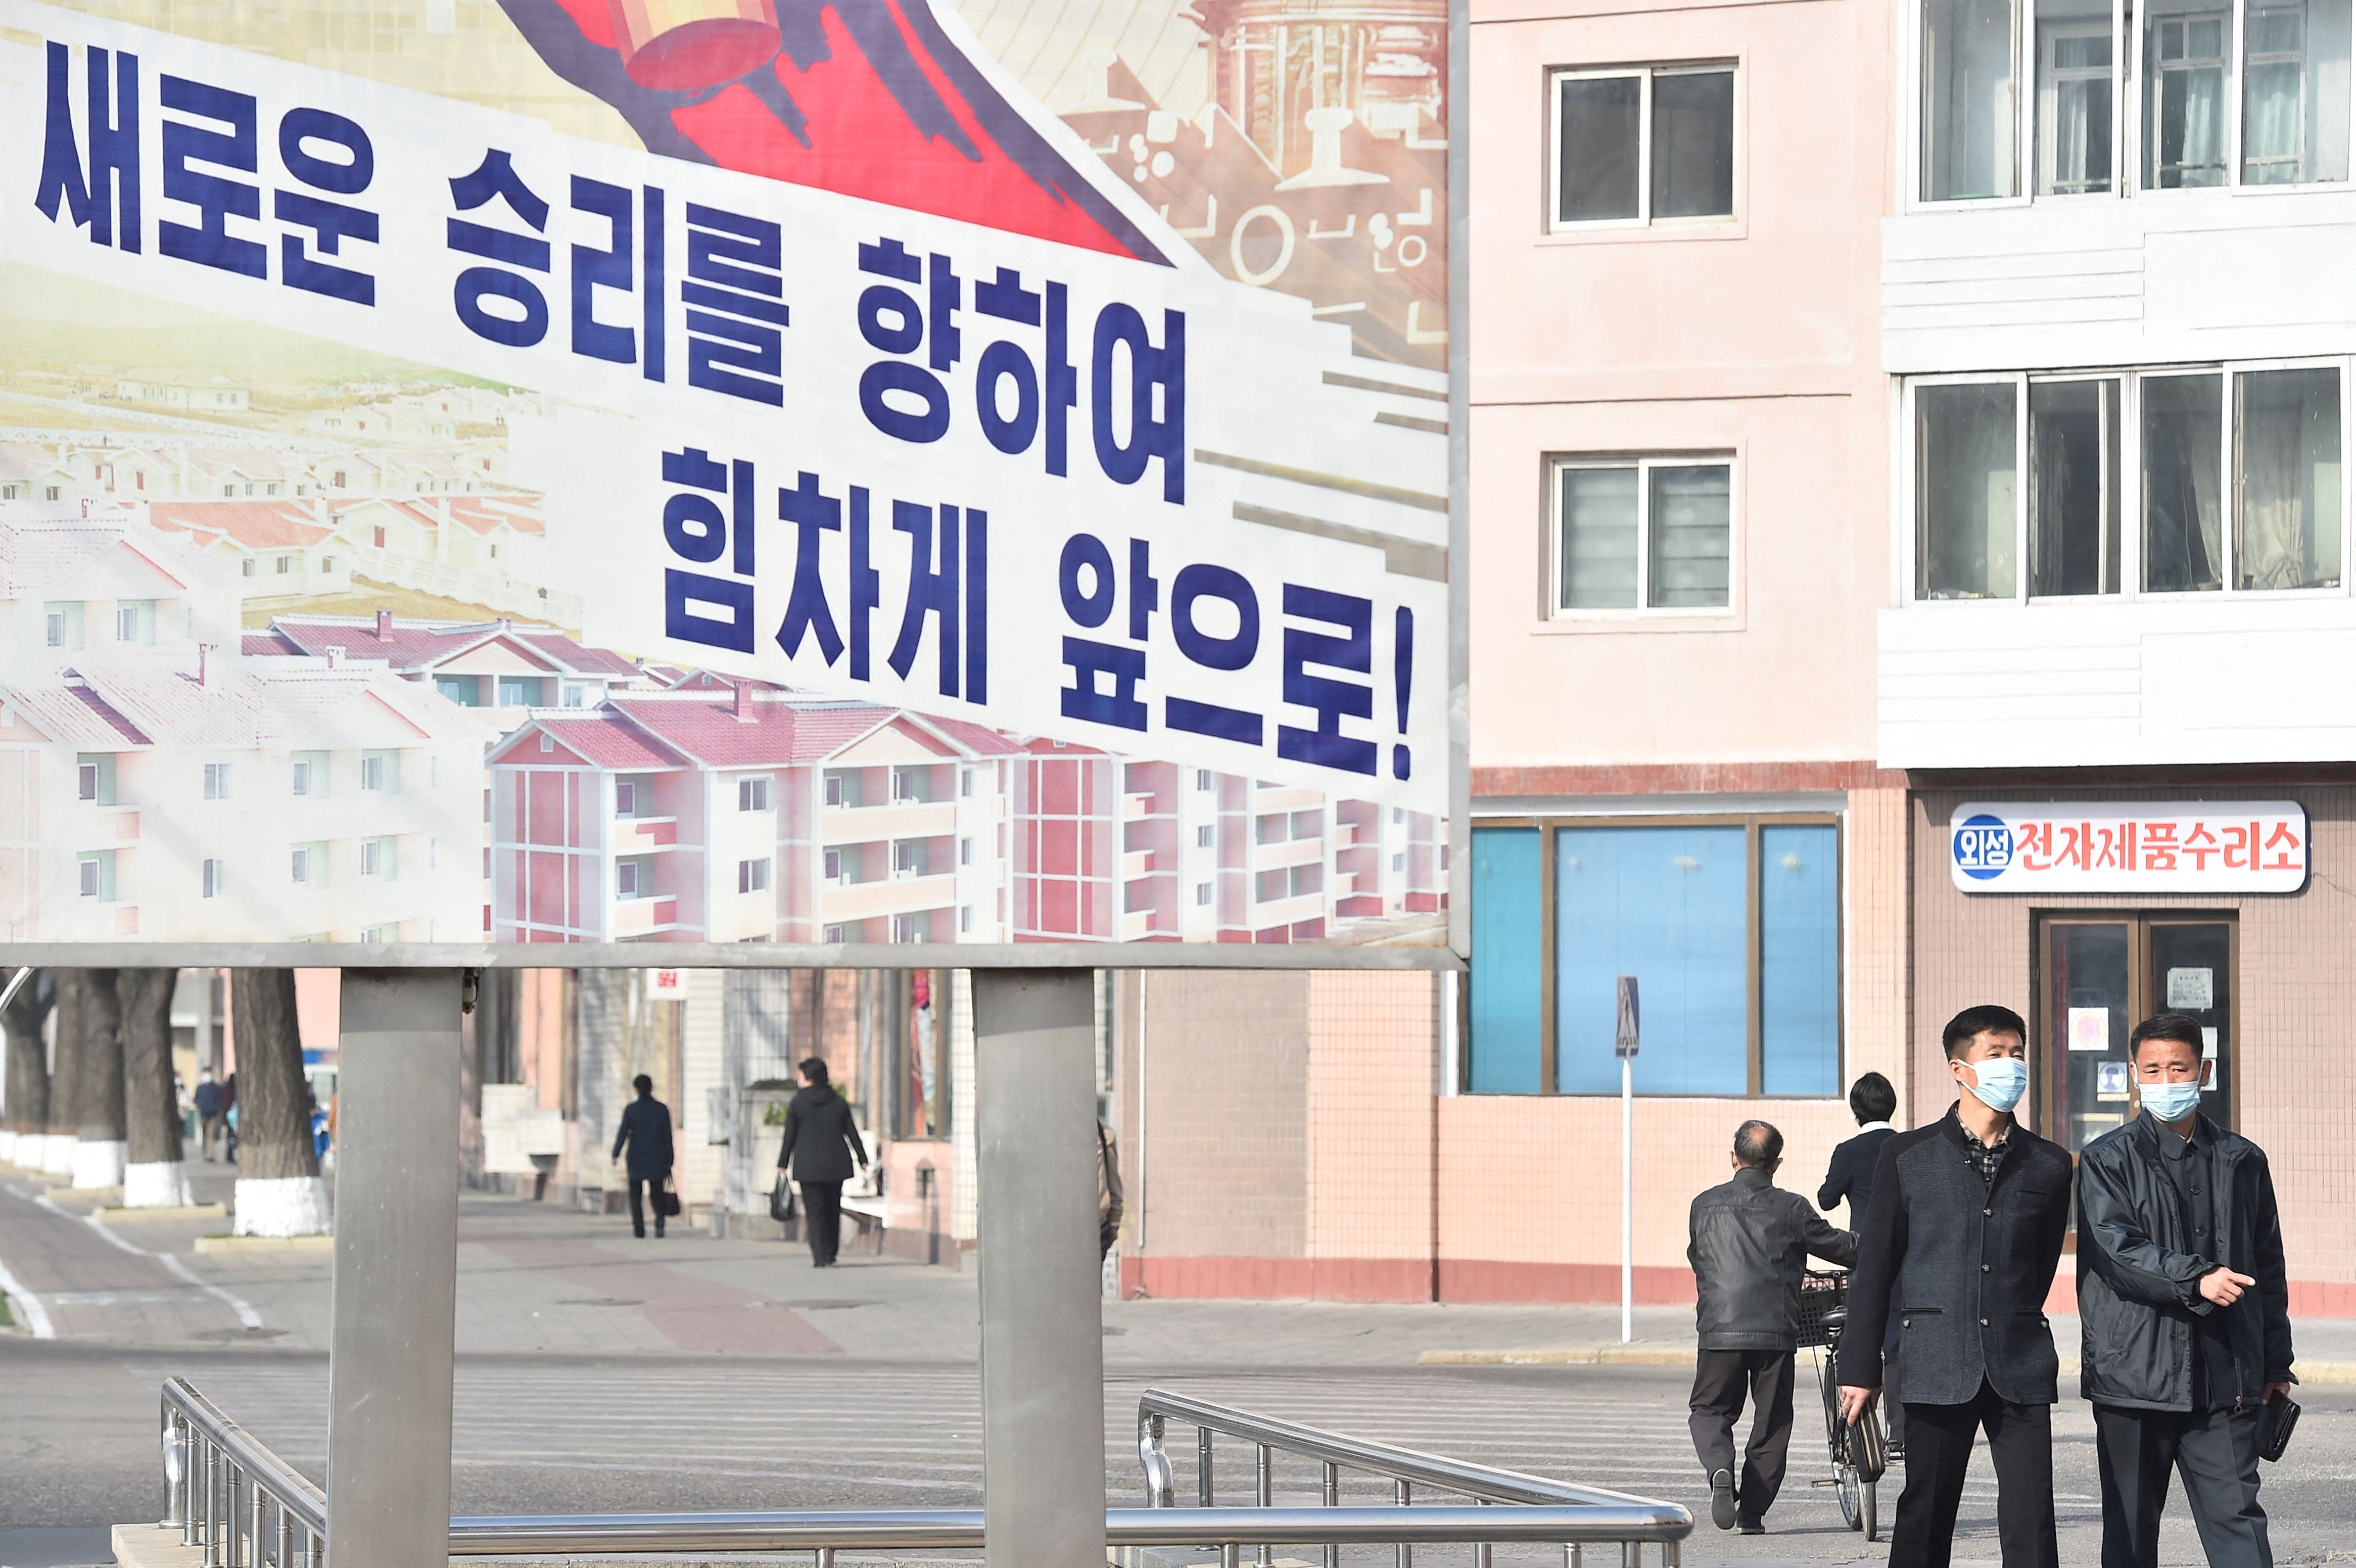 أدى إغلاق حدود كوريا الشمالية COVID-19 إلى ارتفاع حالات الانتحار والمجاعة على نطاق واسع: “ بلا قلب “